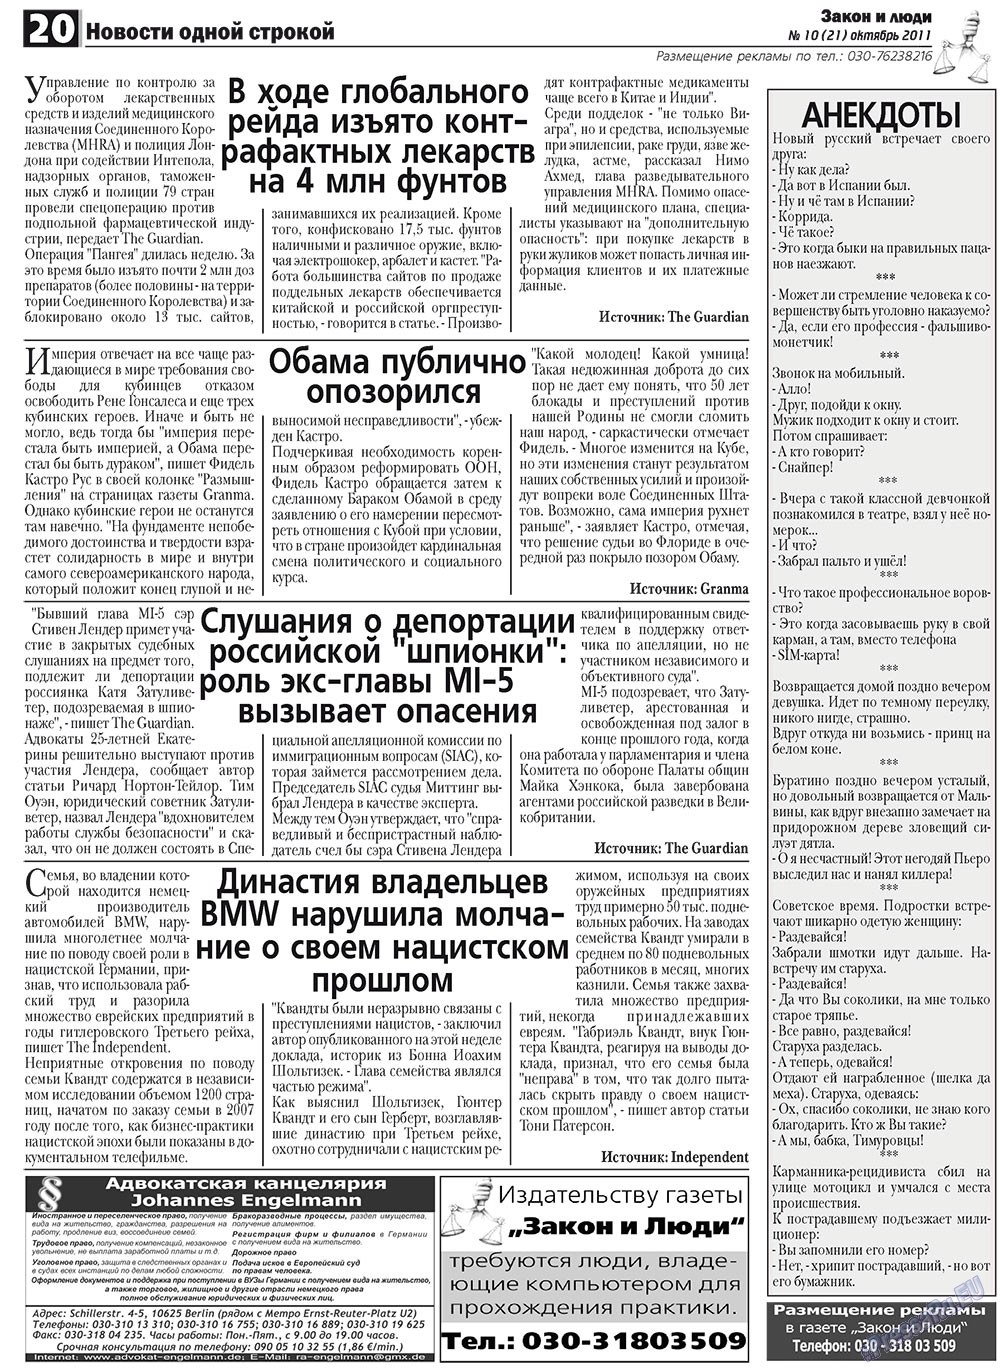 Закон и люди, газета. 2011 №10 стр.20